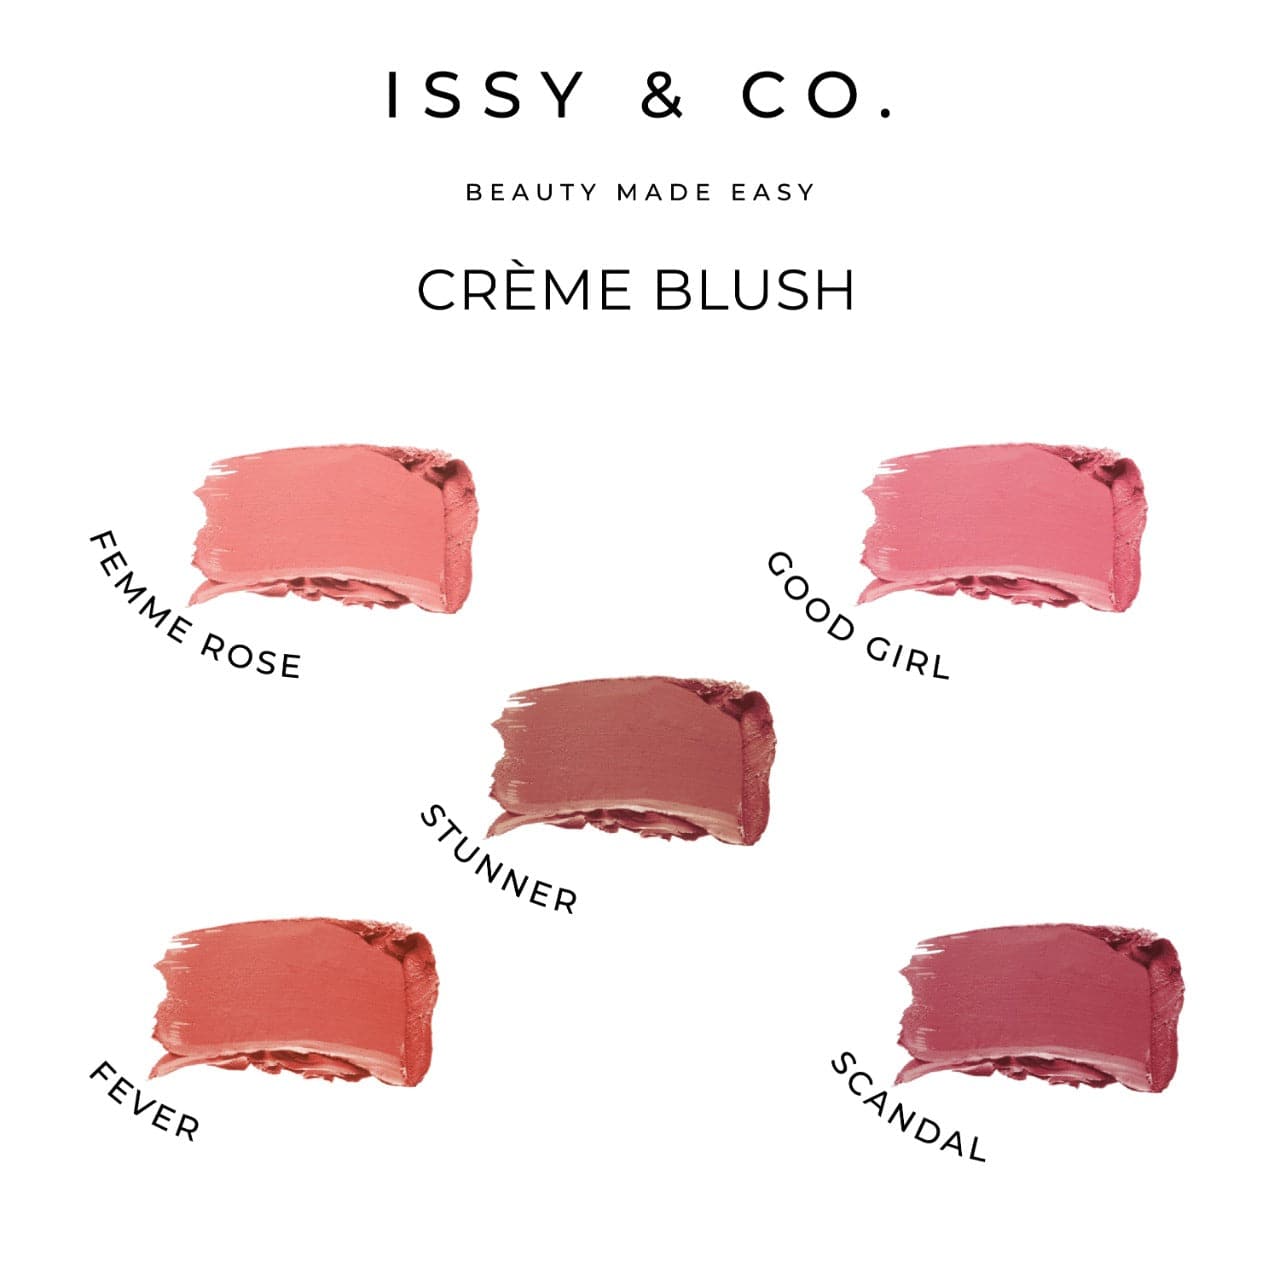 Creme Blush - Femme Rose